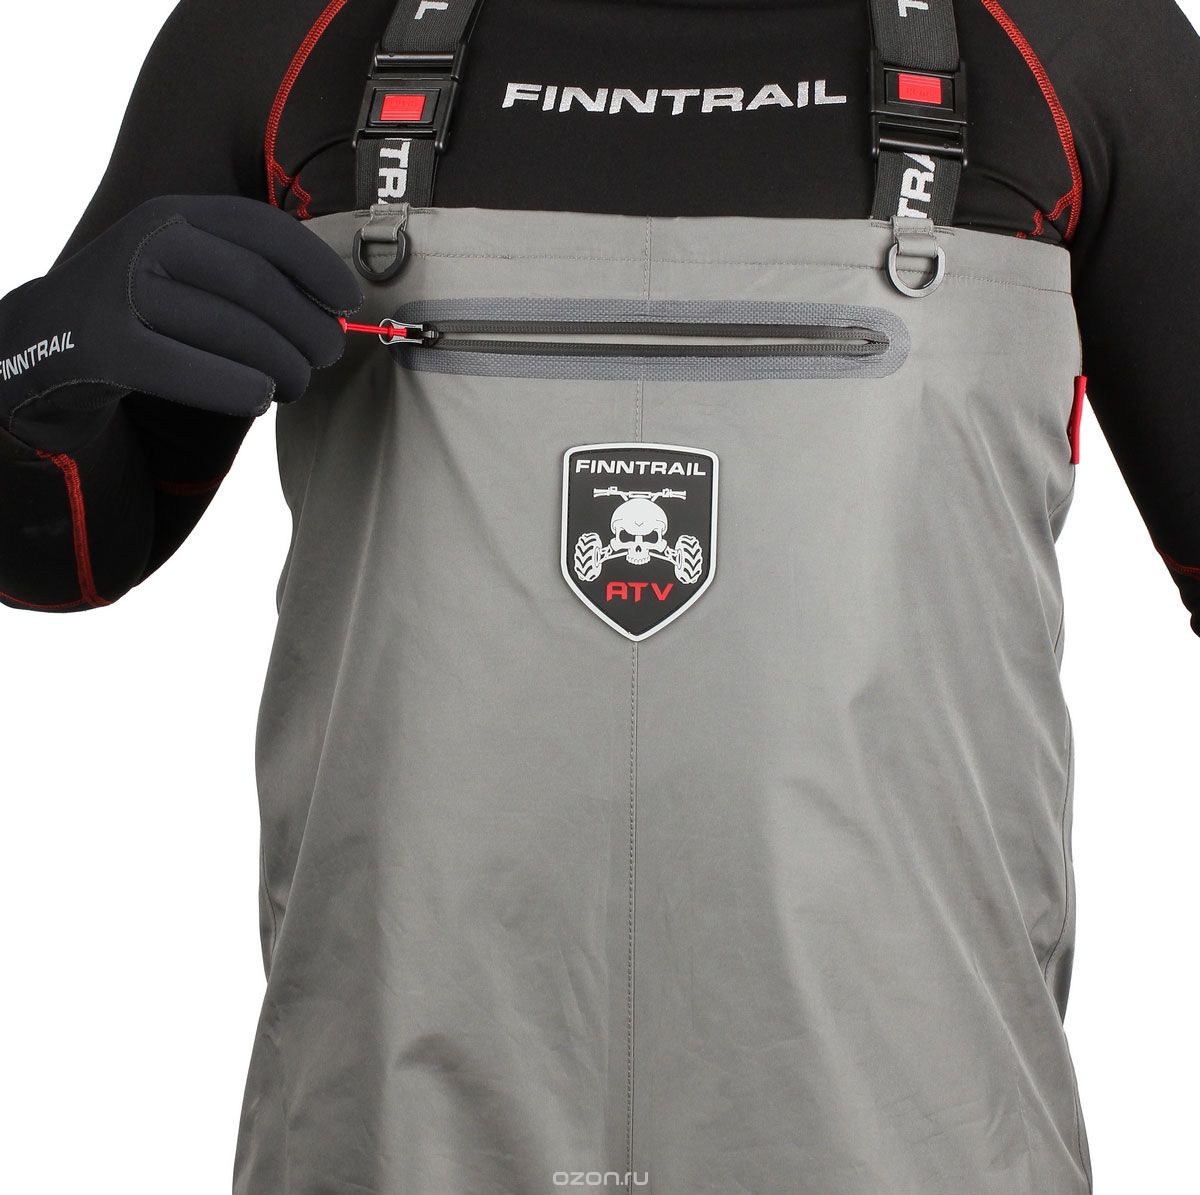  Finntrail Athletic Plus, : . 1522Grey.  L (50/52)